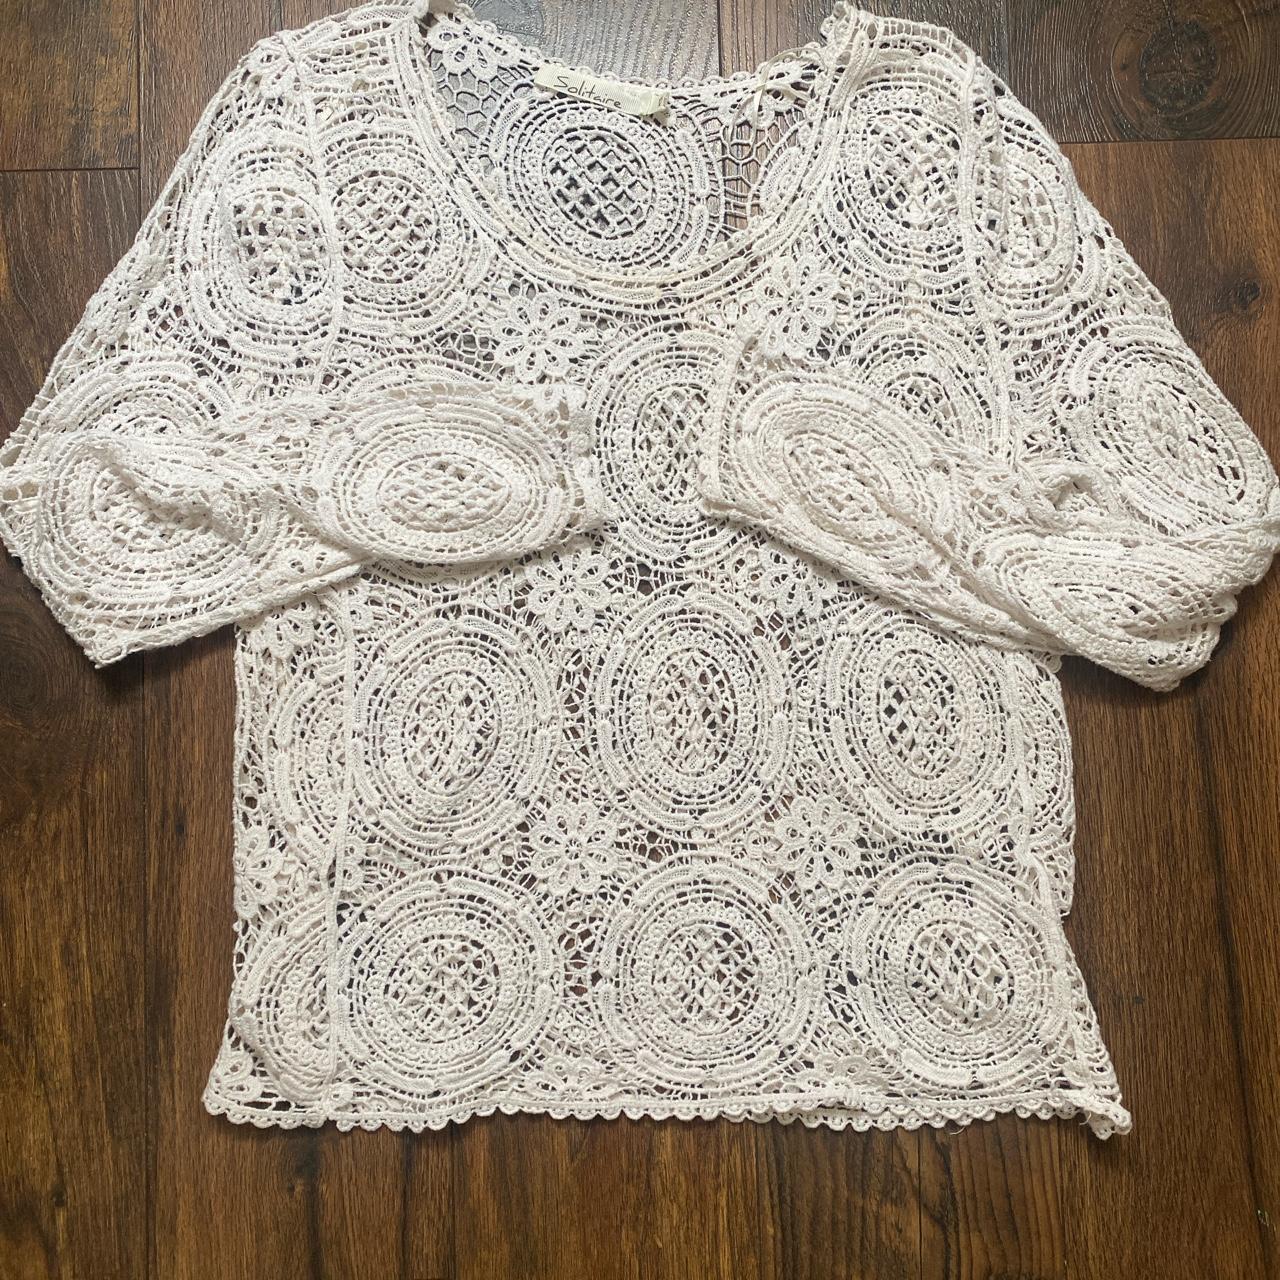 White Crochet Long Sleeve Top